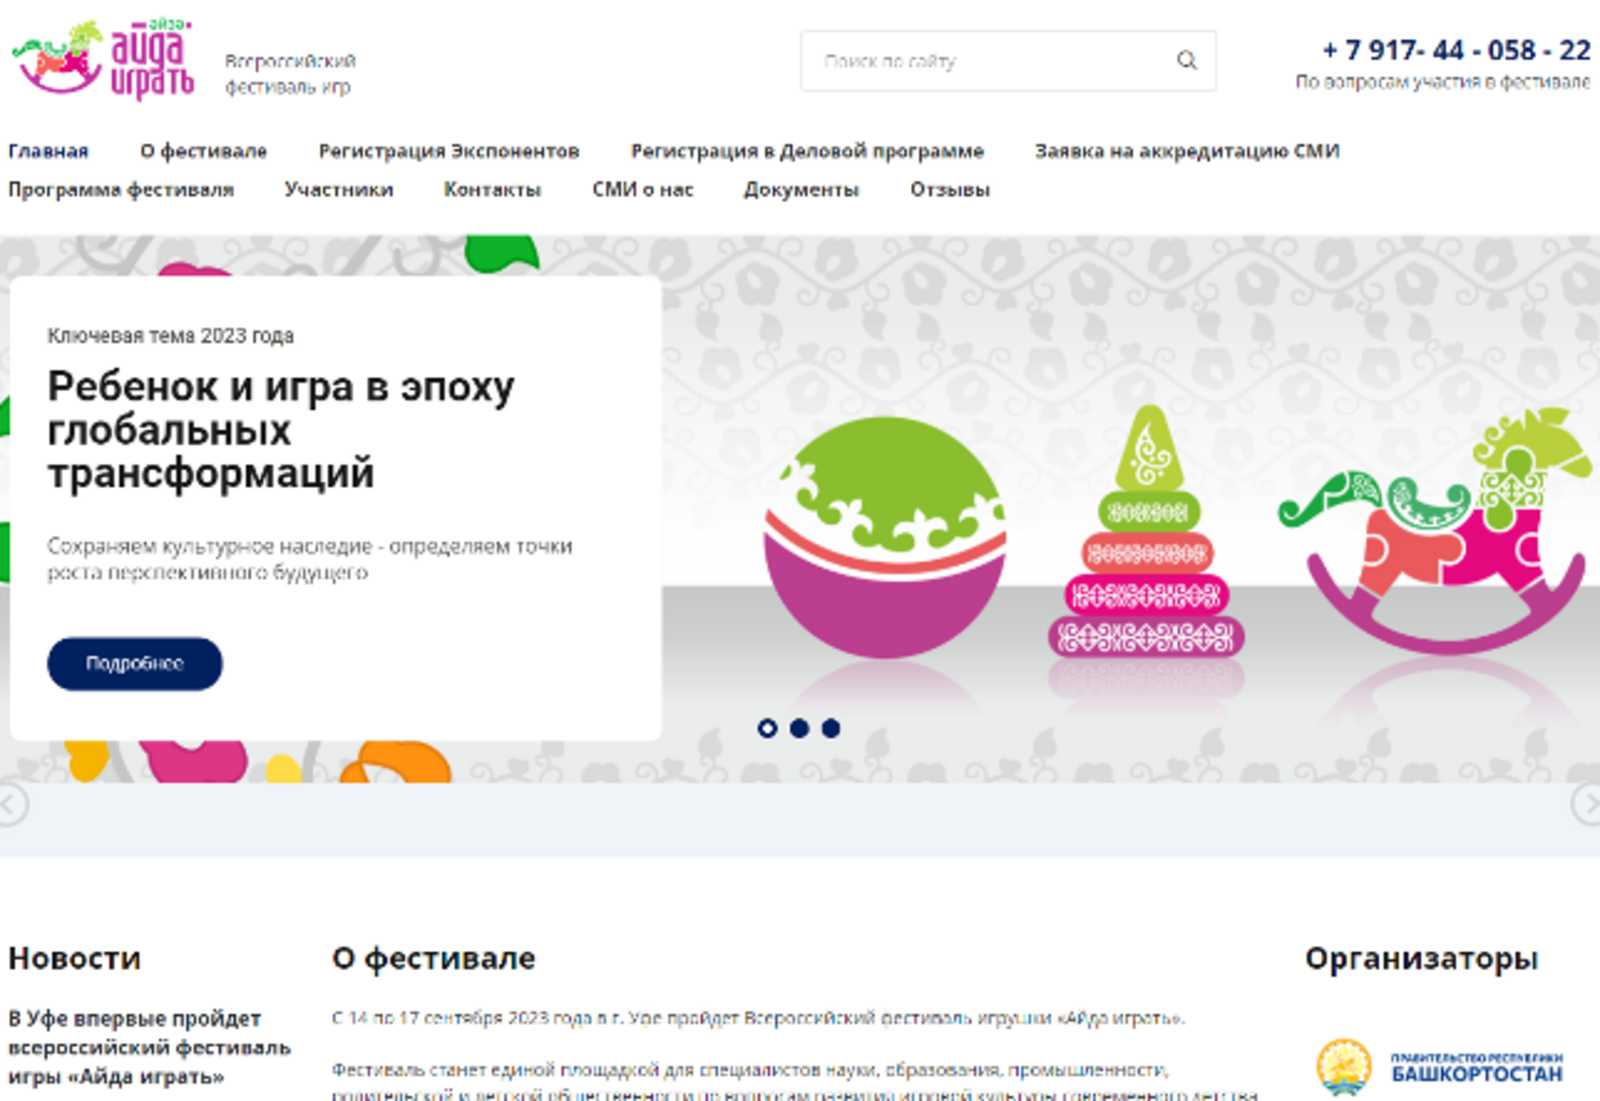 Уфа станет российской столицей детских игр на фестивале «Айда играть»